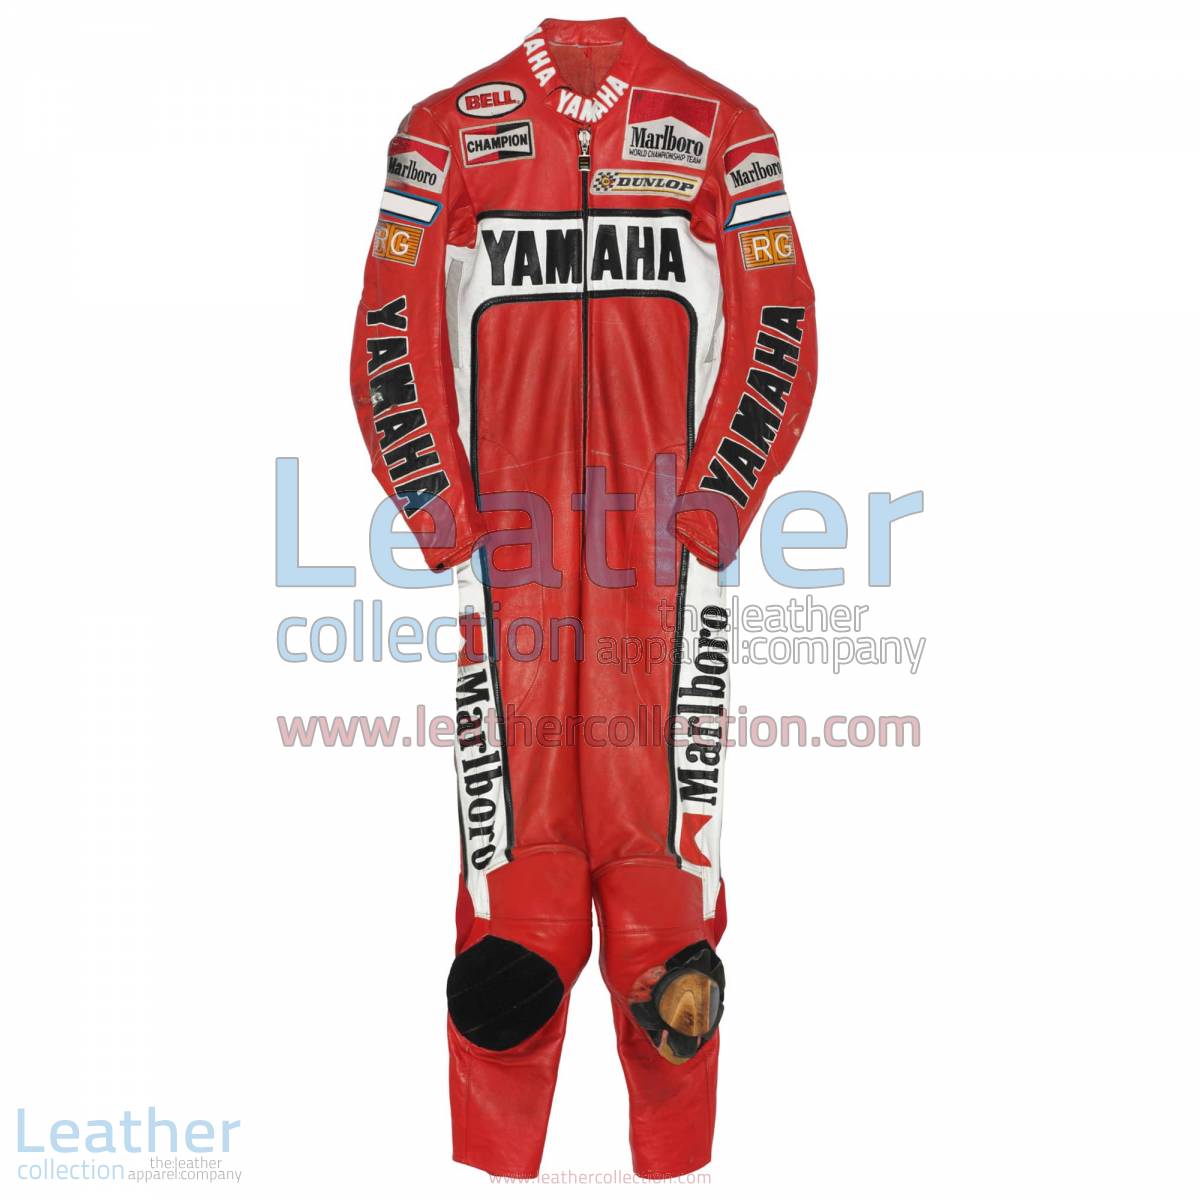 Eddie Lawson Marlboro Yamaha GP 1988 Leathers